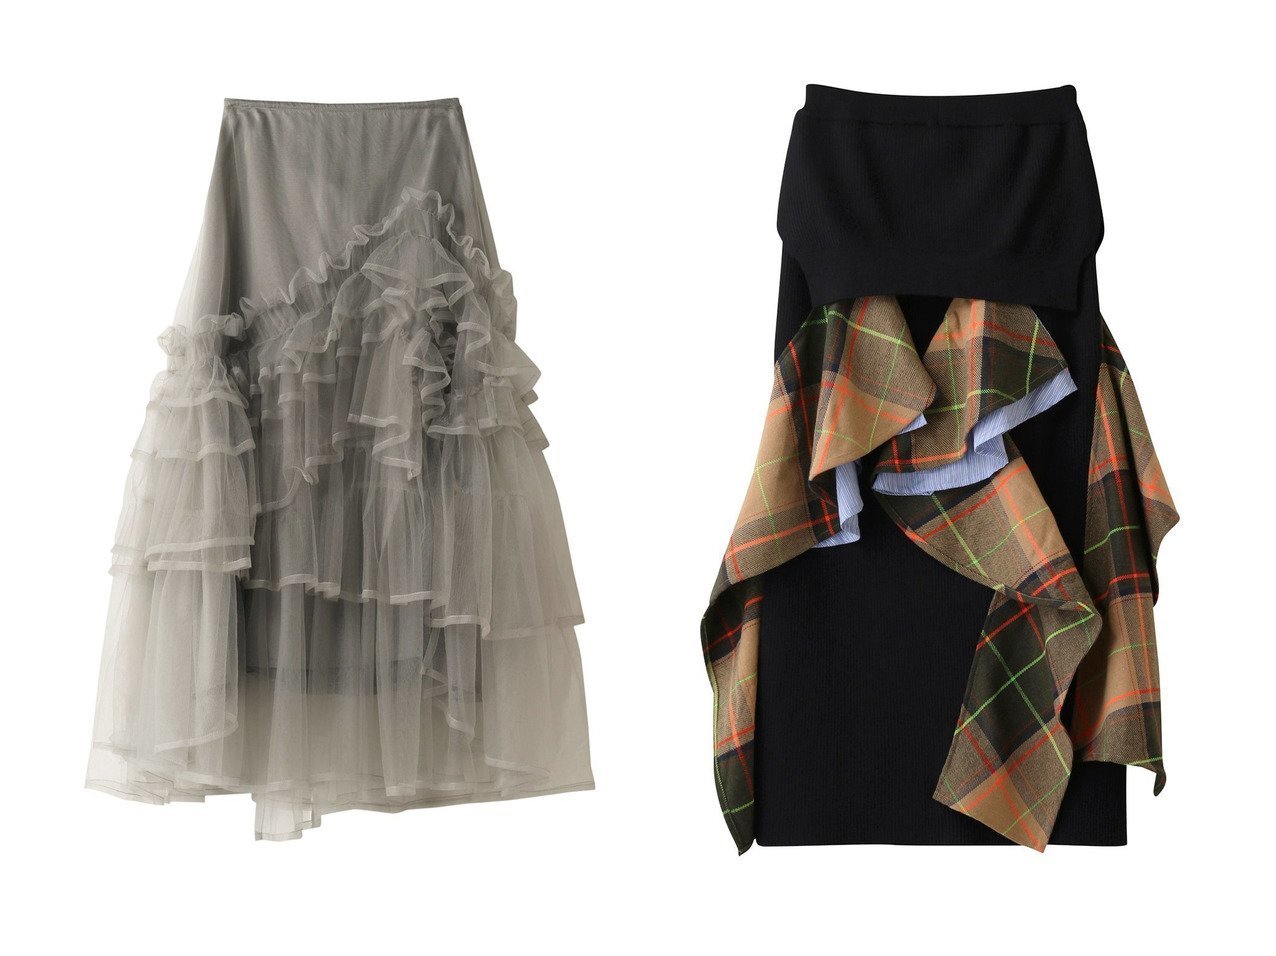 【ENFOLD/エンフォルド】のKnit Layered スカート&【REKISAMI/レキサミ】の【Chika Kisada】ナイロンチュールレイヤードスカート スカートのおすすめ！人気、レディースファッションの通販  おすすめで人気のファッション通販商品 インテリア・家具・キッズファッション・メンズファッション・レディースファッション・服の通販 founy(ファニー) https://founy.com/ ファッション Fashion レディース WOMEN スカート Skirt ロングスカート Long Skirt エレガント シンプル チュール チェック ロング |ID:crp329100000000255